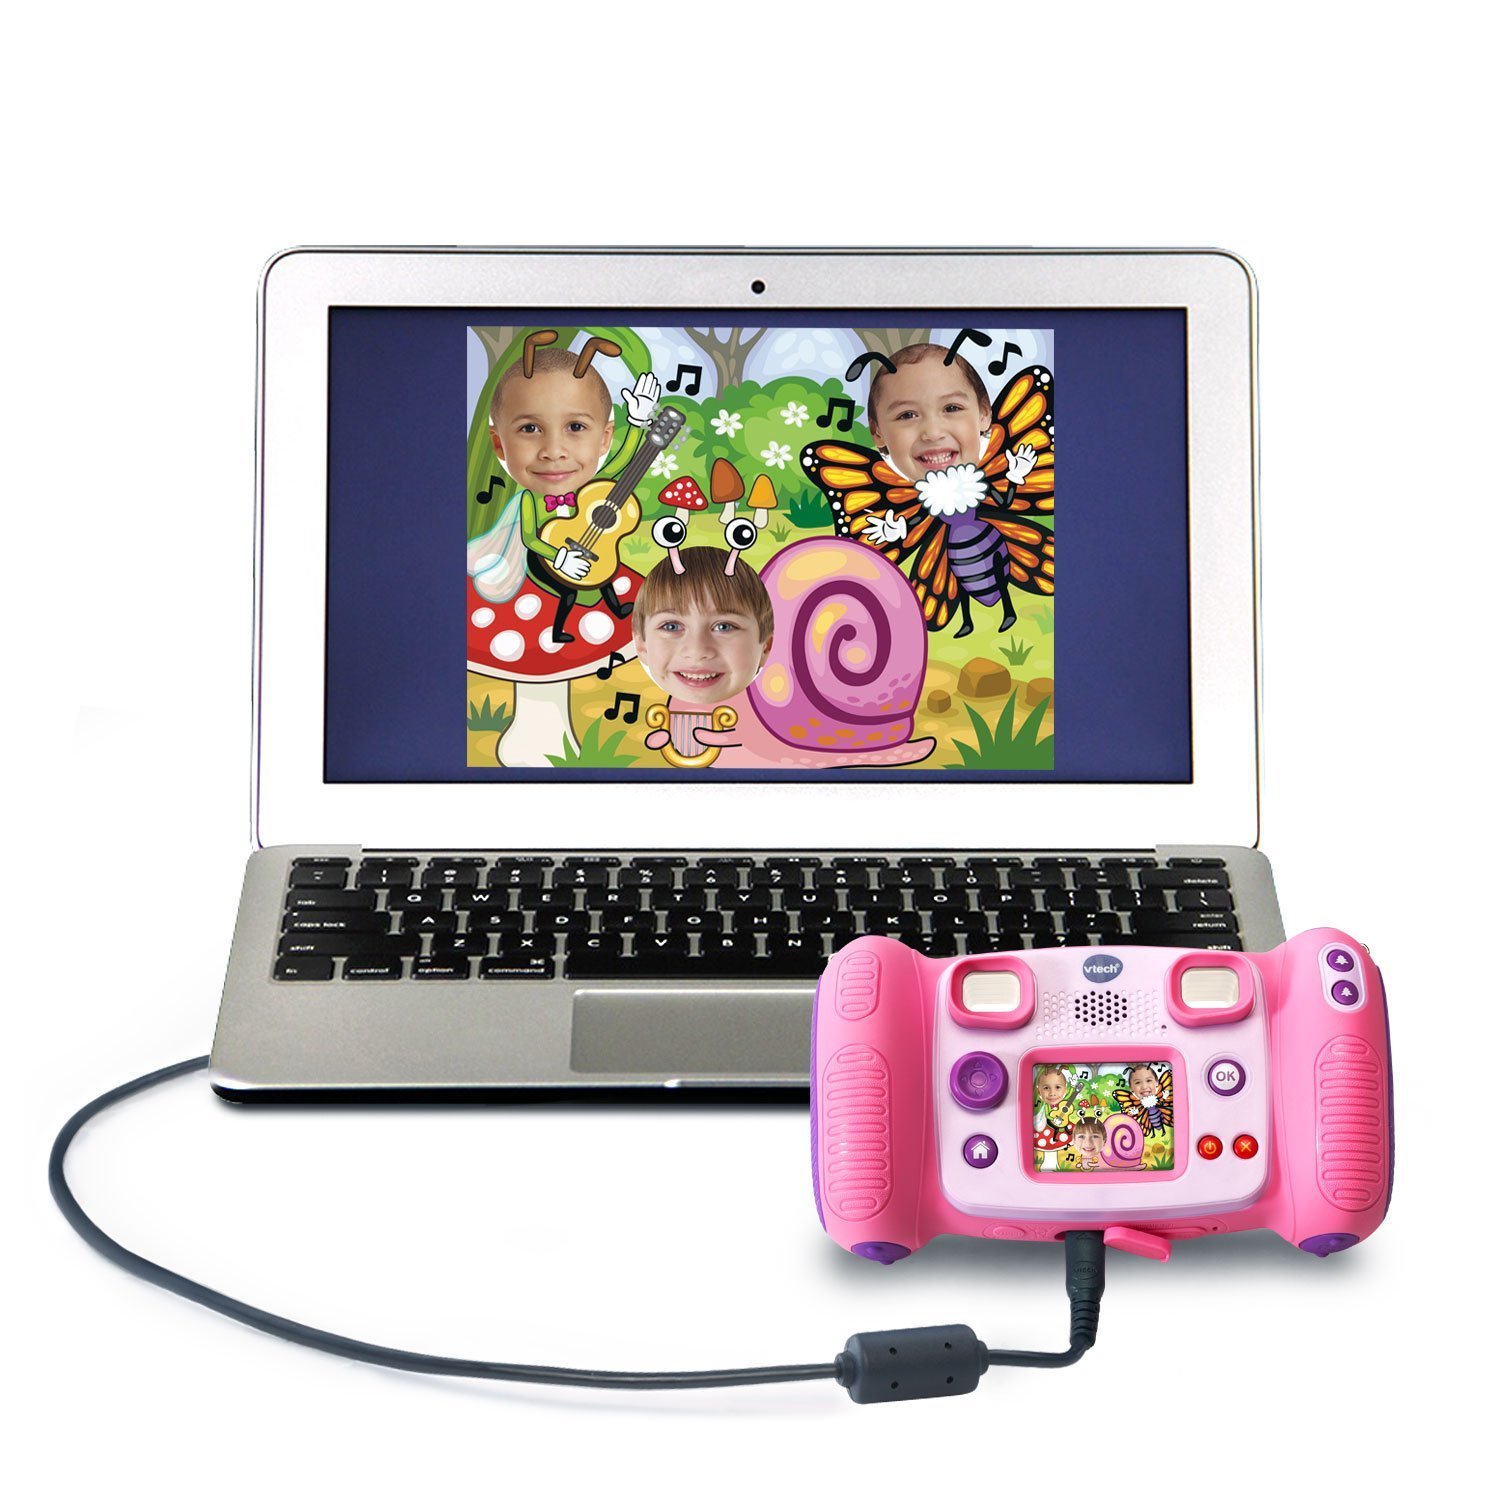 Цифровая камера - Kidizoom Pix, розового цвета  